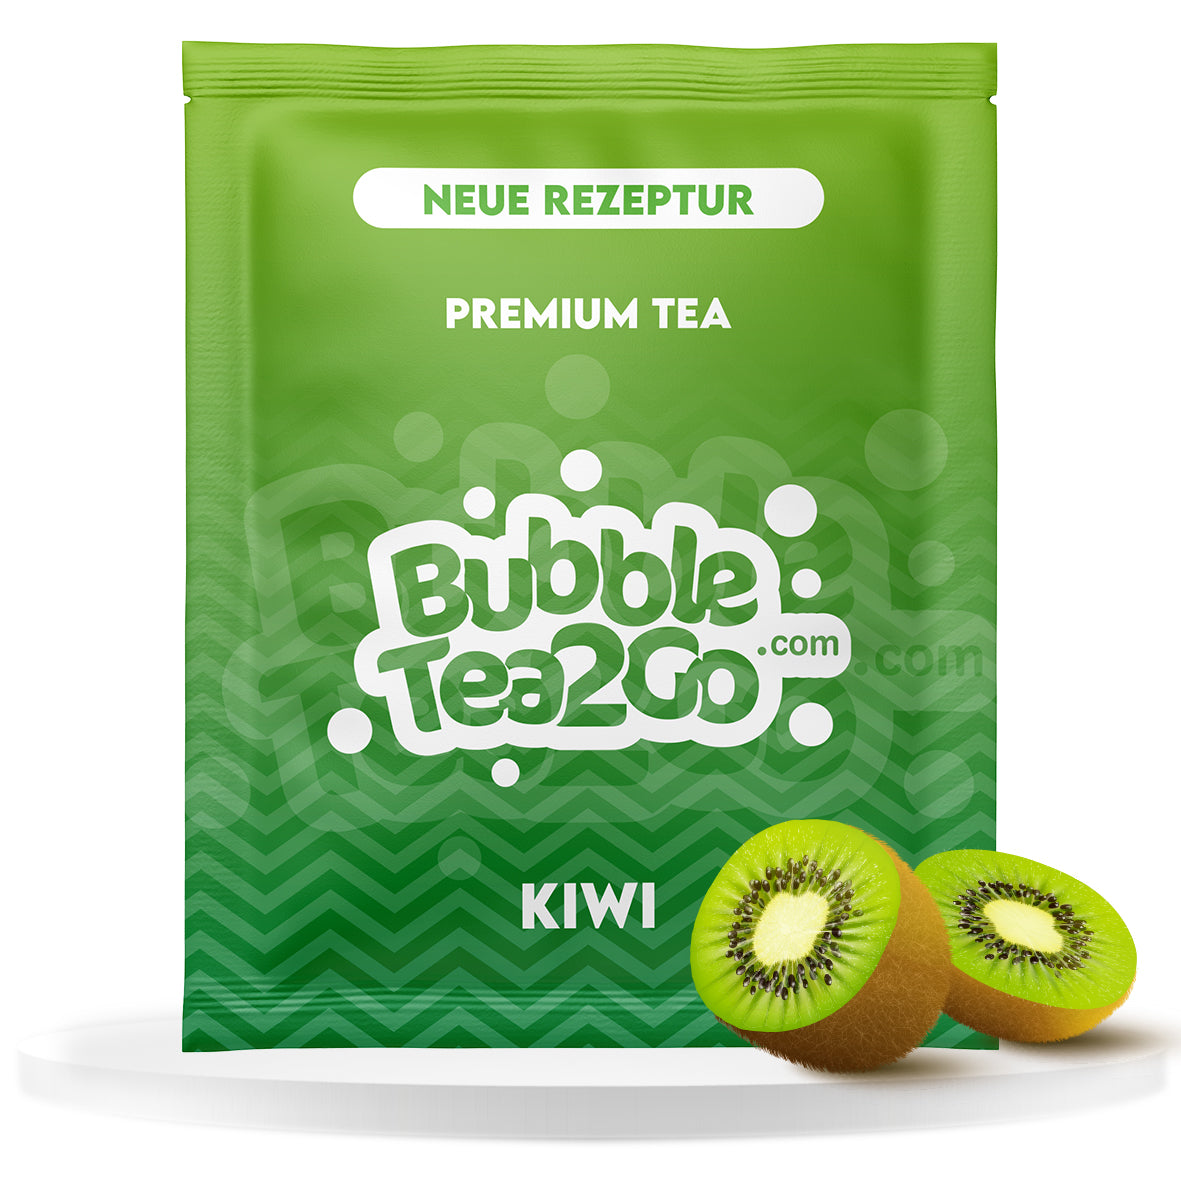 Premium Tea - Kiwi